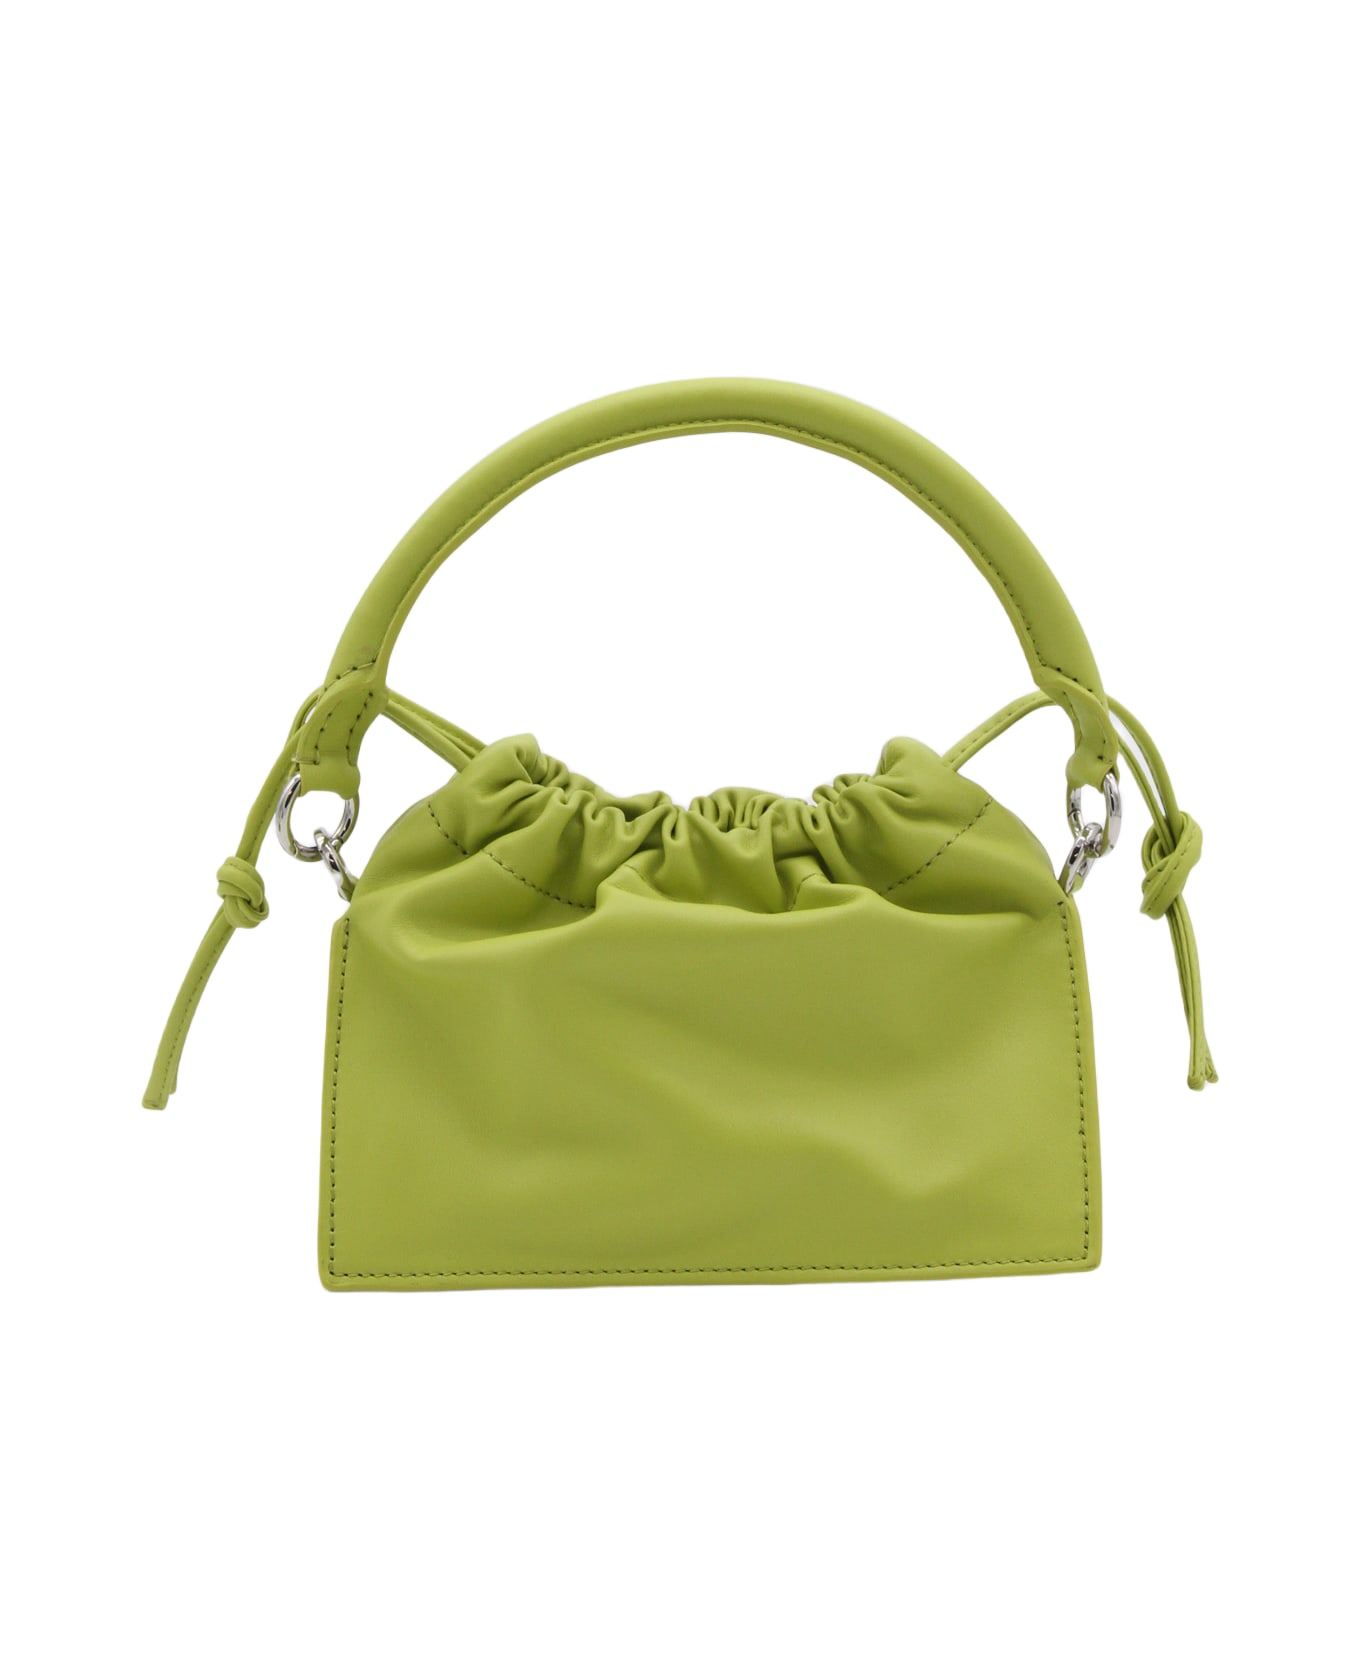 YUZEFI Green Leather Bom Shoulder Bag - Green